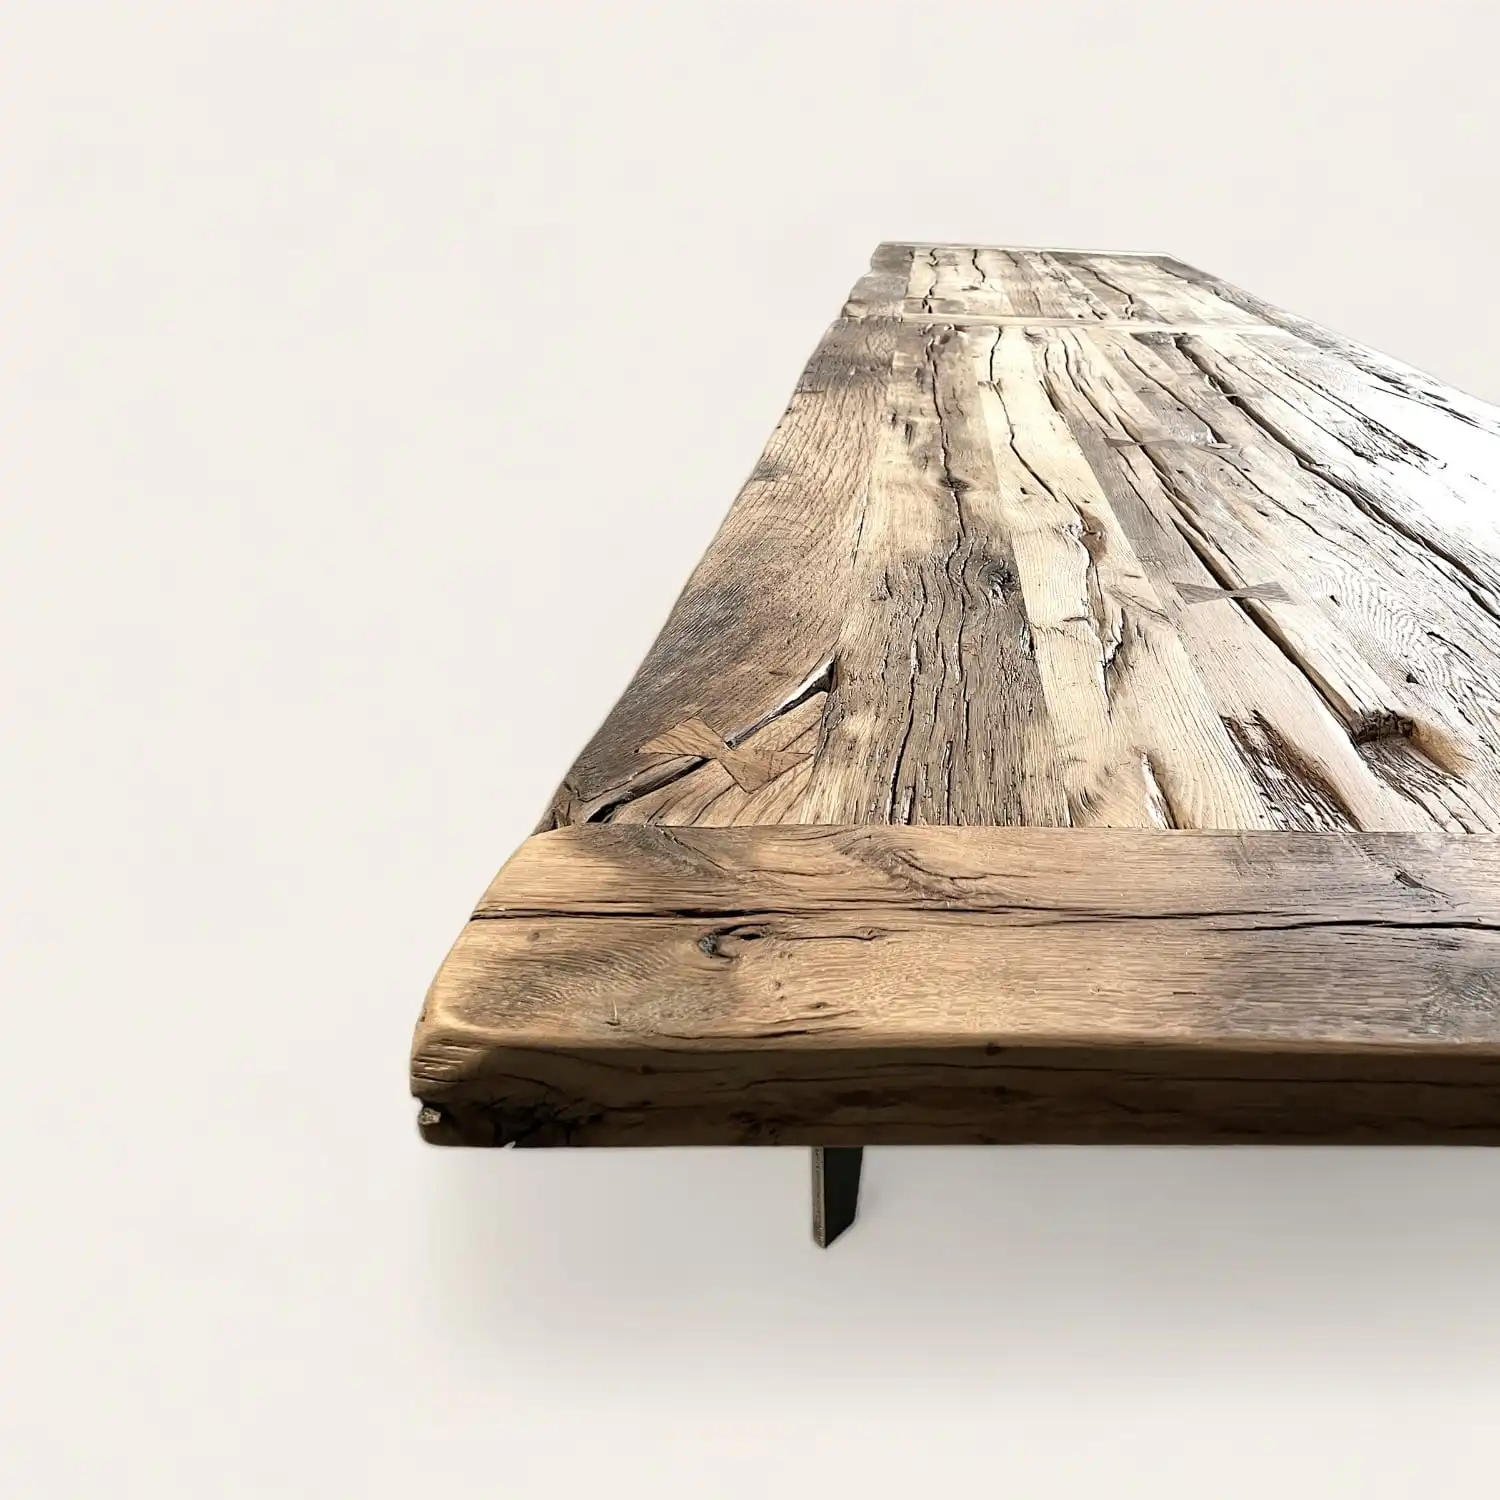  Table de fermette en bois massif avec finition naturelle vieillie, angle montrant les détails des veines et textures du bois. 